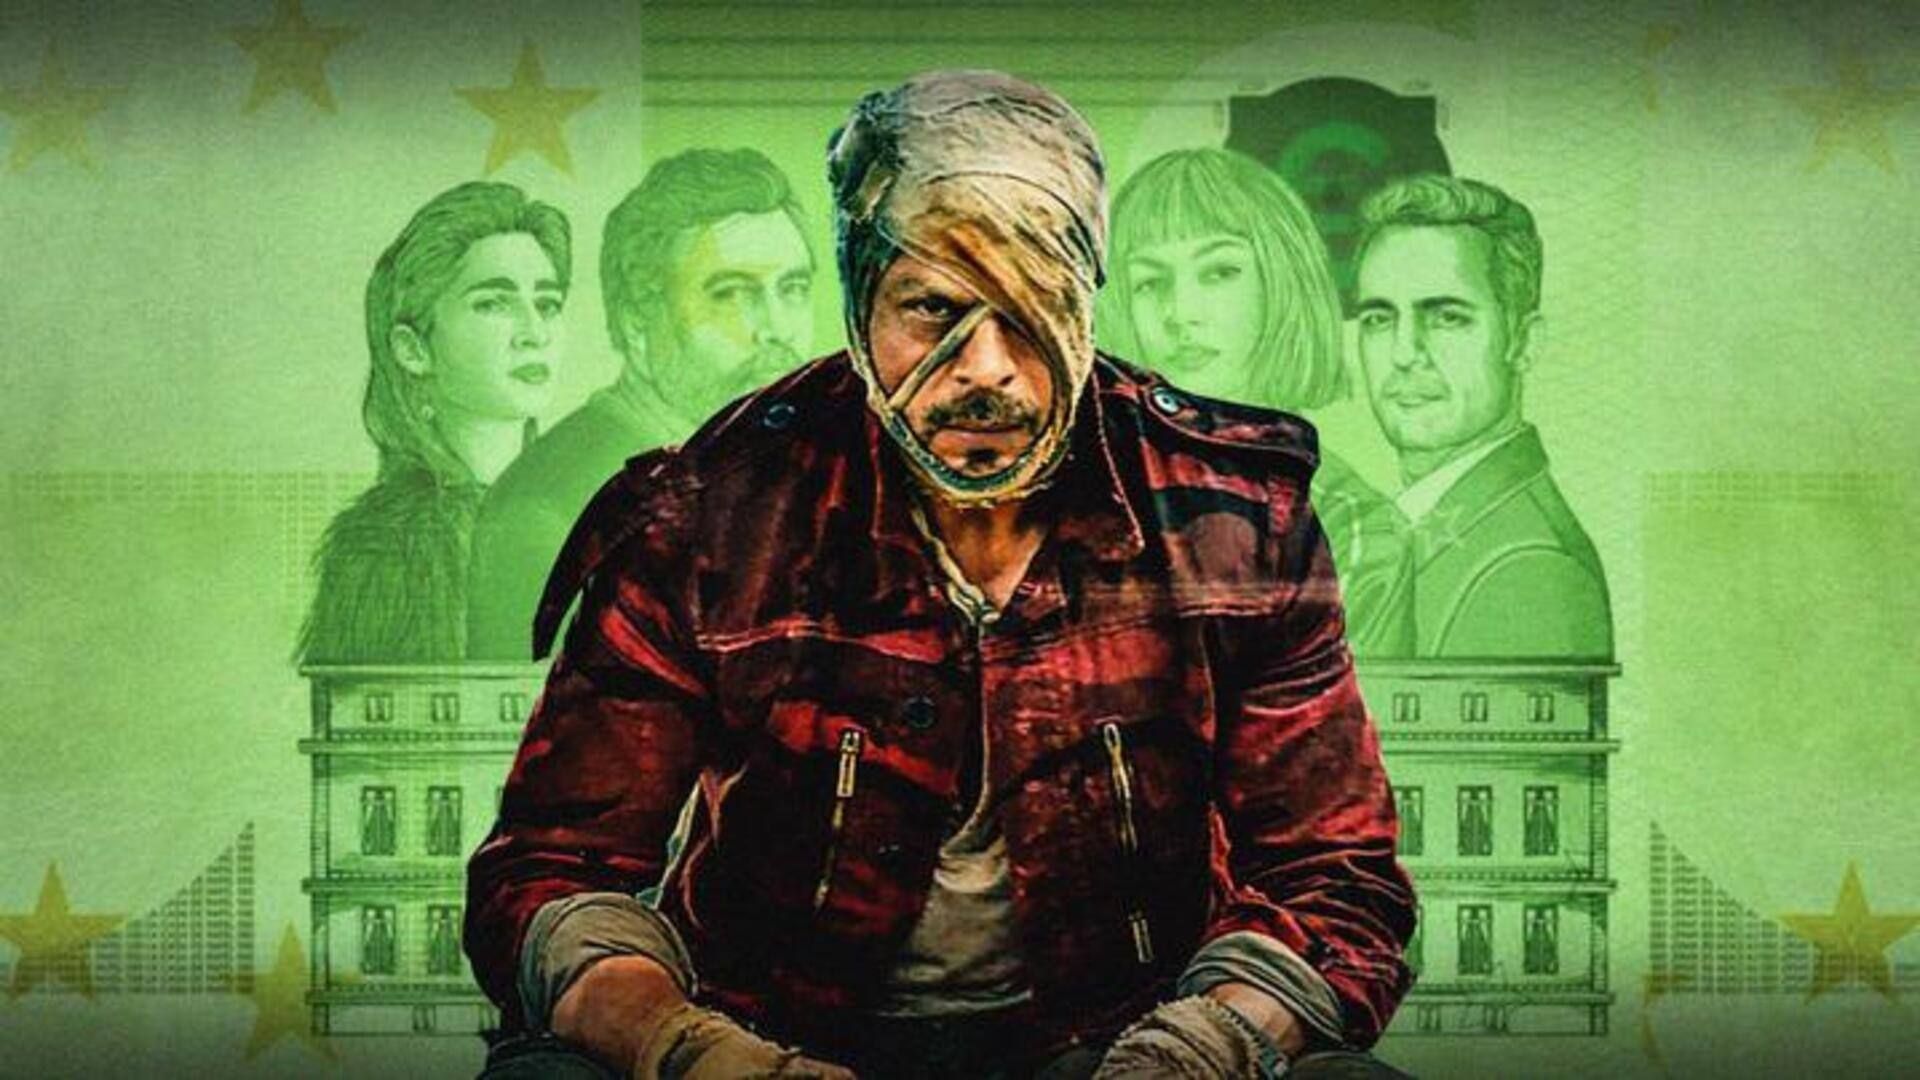 क्या शाहरुख खान की 'जवान' है स्पेनिश वेब सीरीज 'मनी हाइस्ट' का रूपांतरण? जानिए सच्चाई